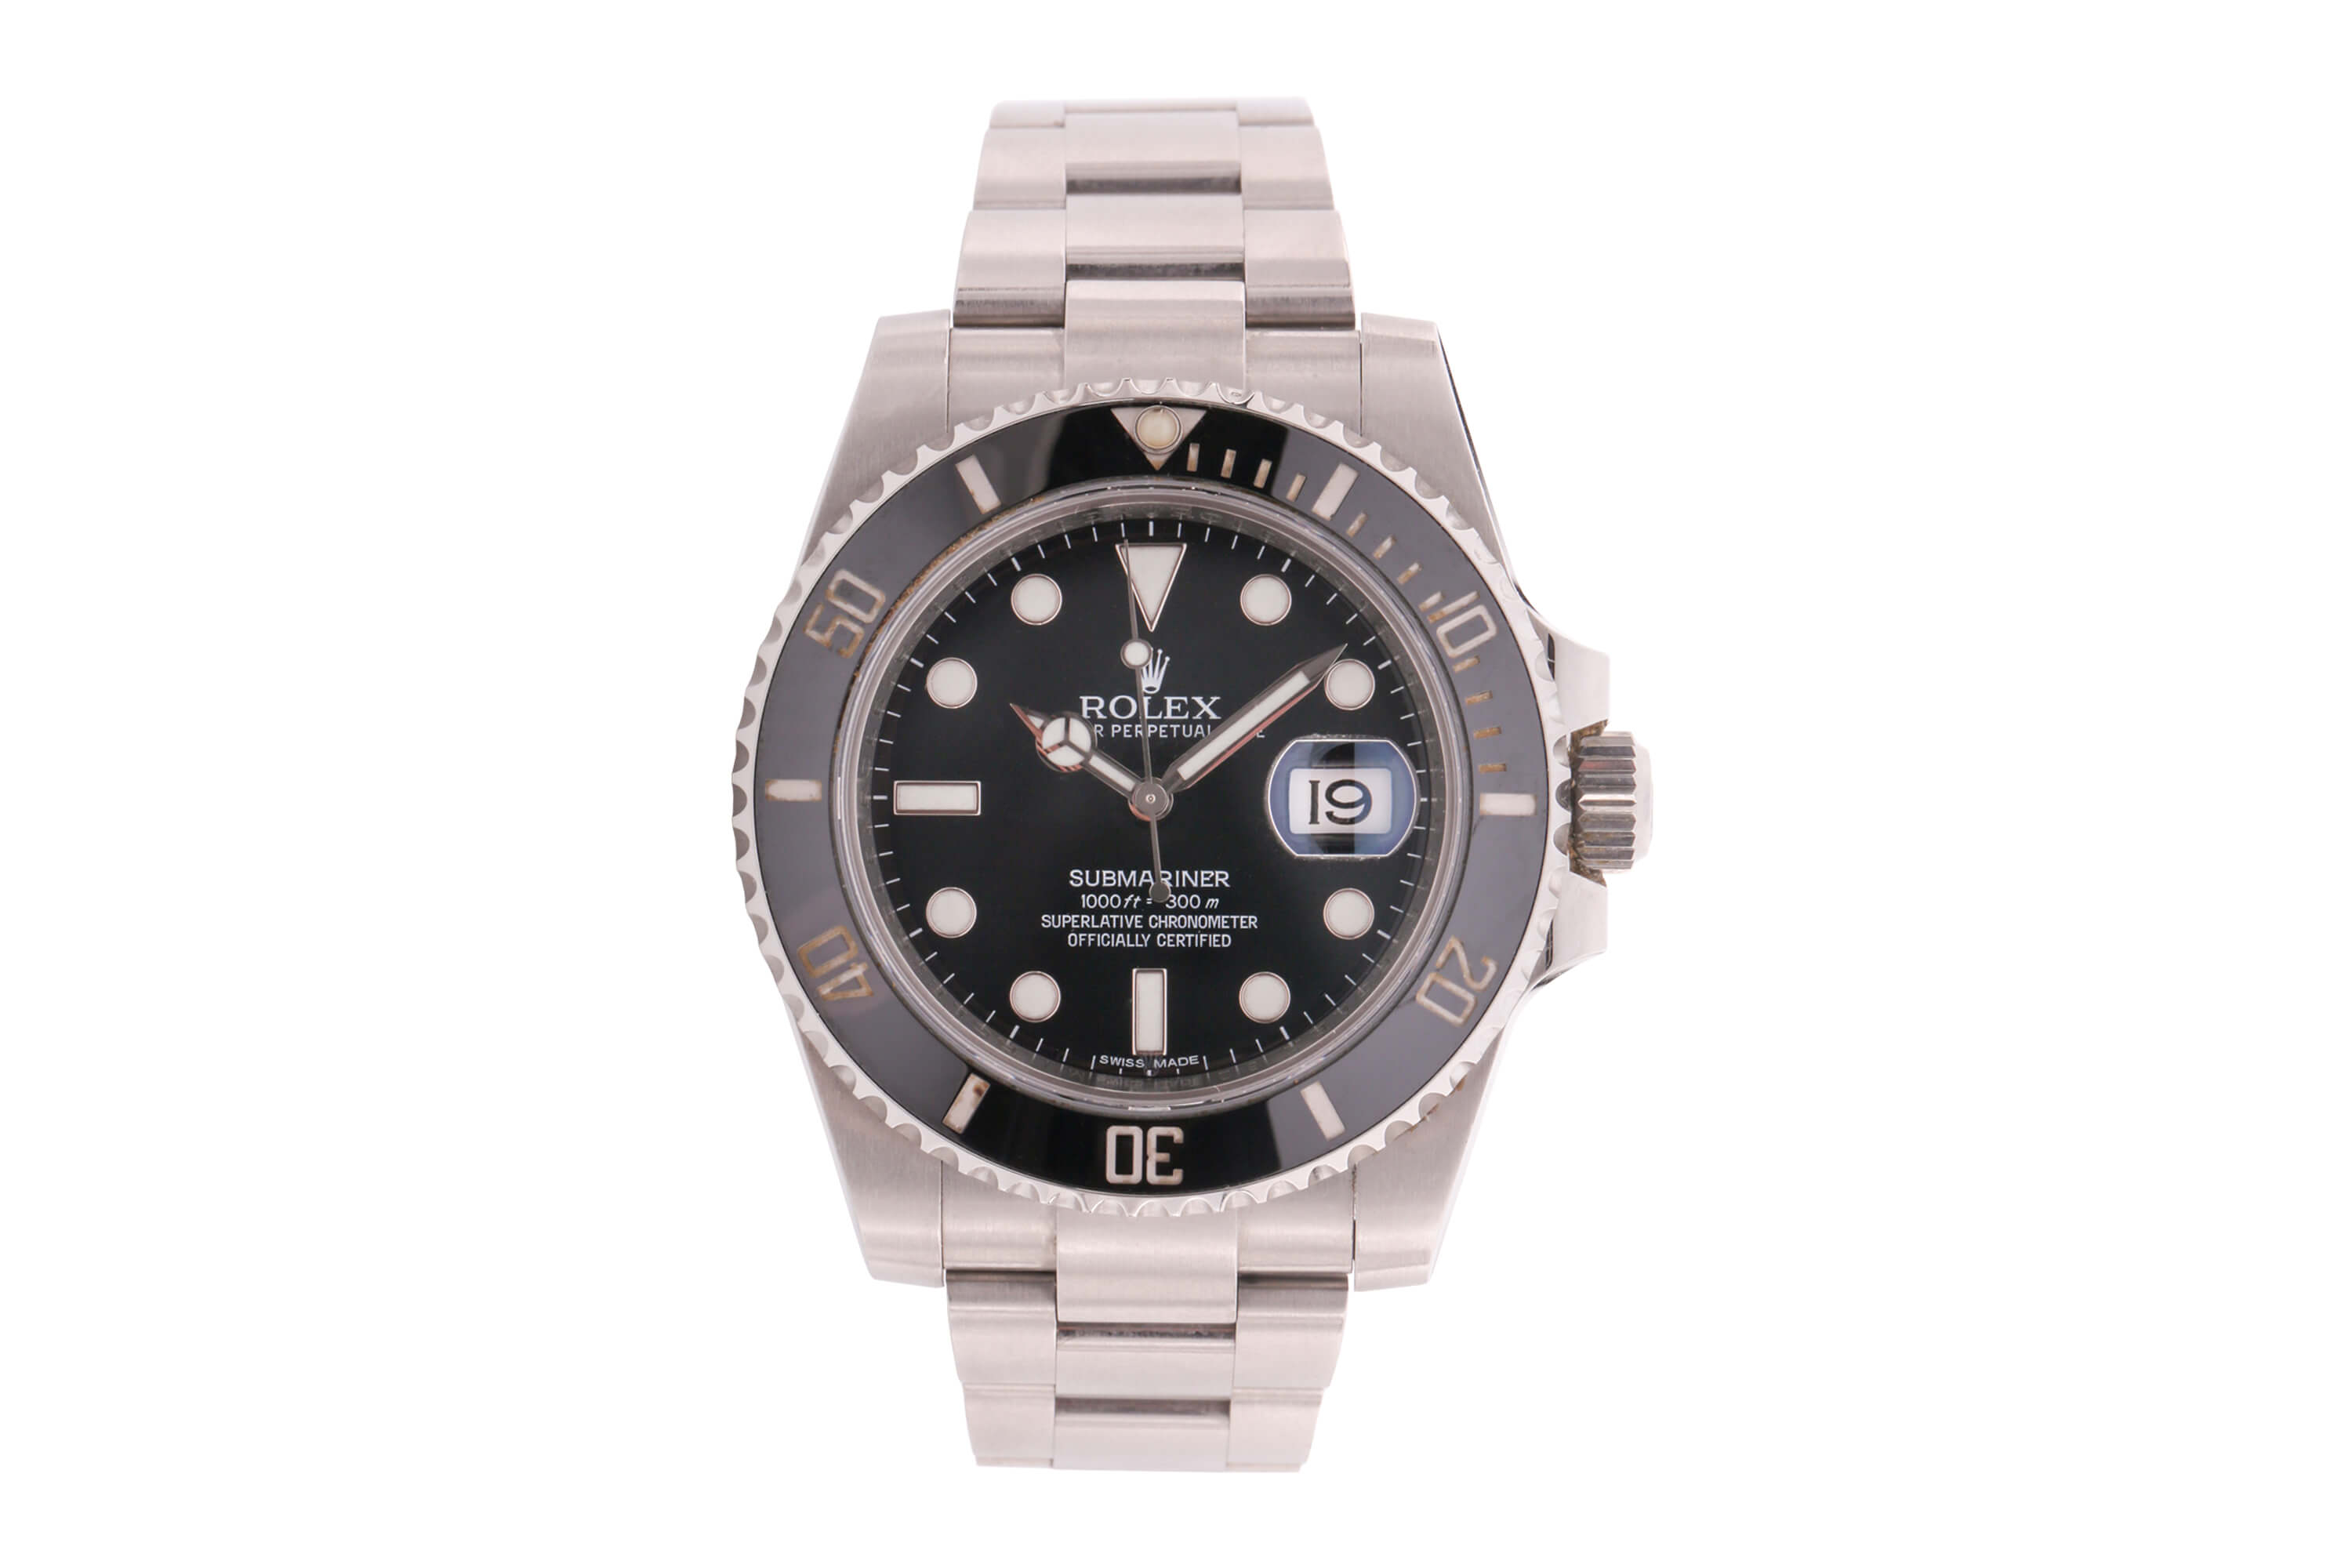 Rolex Submariner stainless steel wristwatch